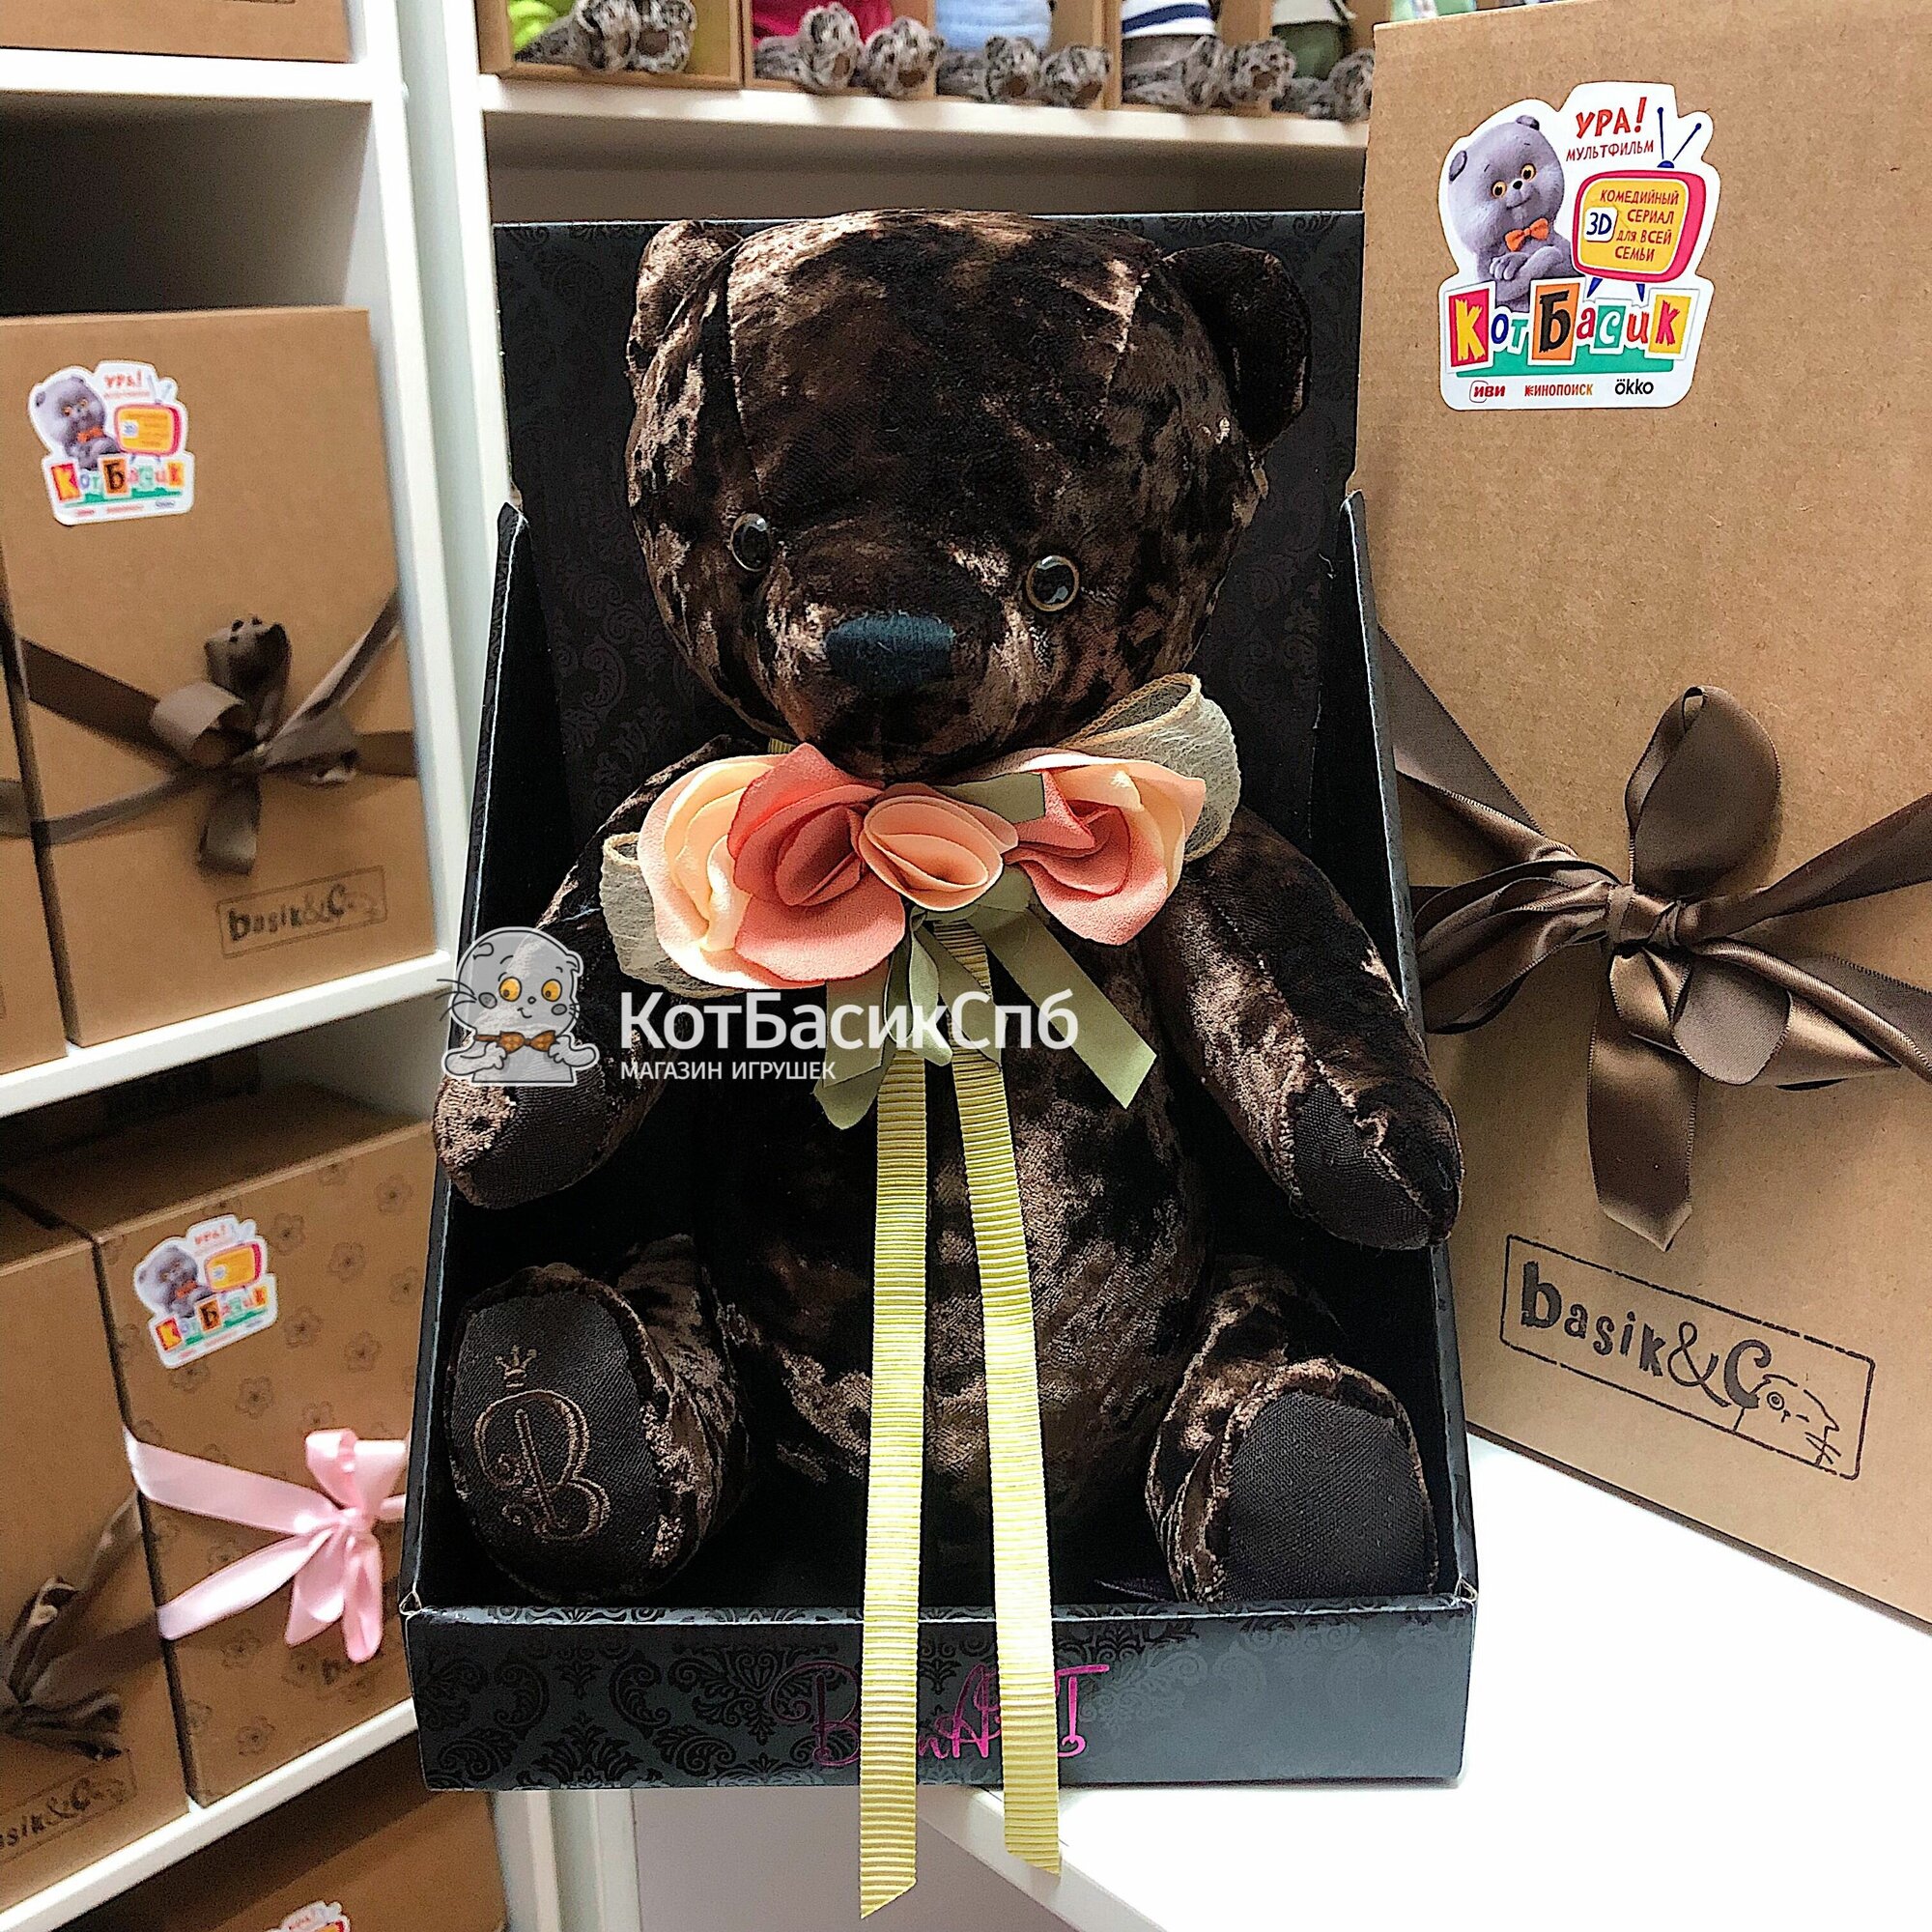 Мягкая игрушка медведь 30 см Basik&Co в подарочной коробке-подставке, от производителя Кота Басика - Медведь БернАрт коричневый